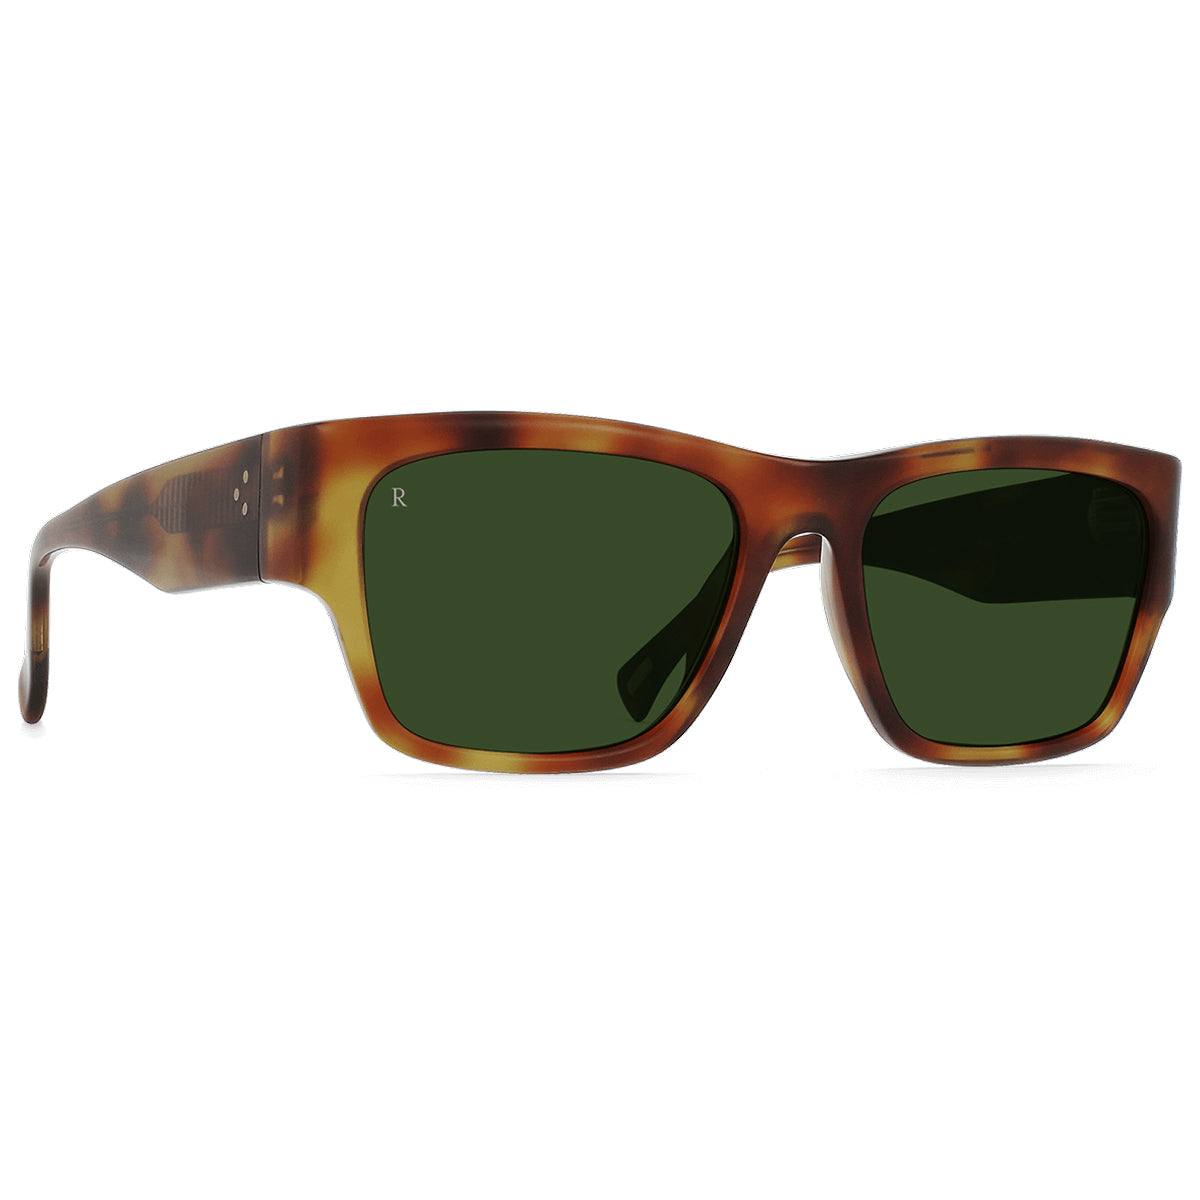 Raen Rufio Sunglasses - Split Finish Moab Tortoise/Bottle Green - 55 image 1